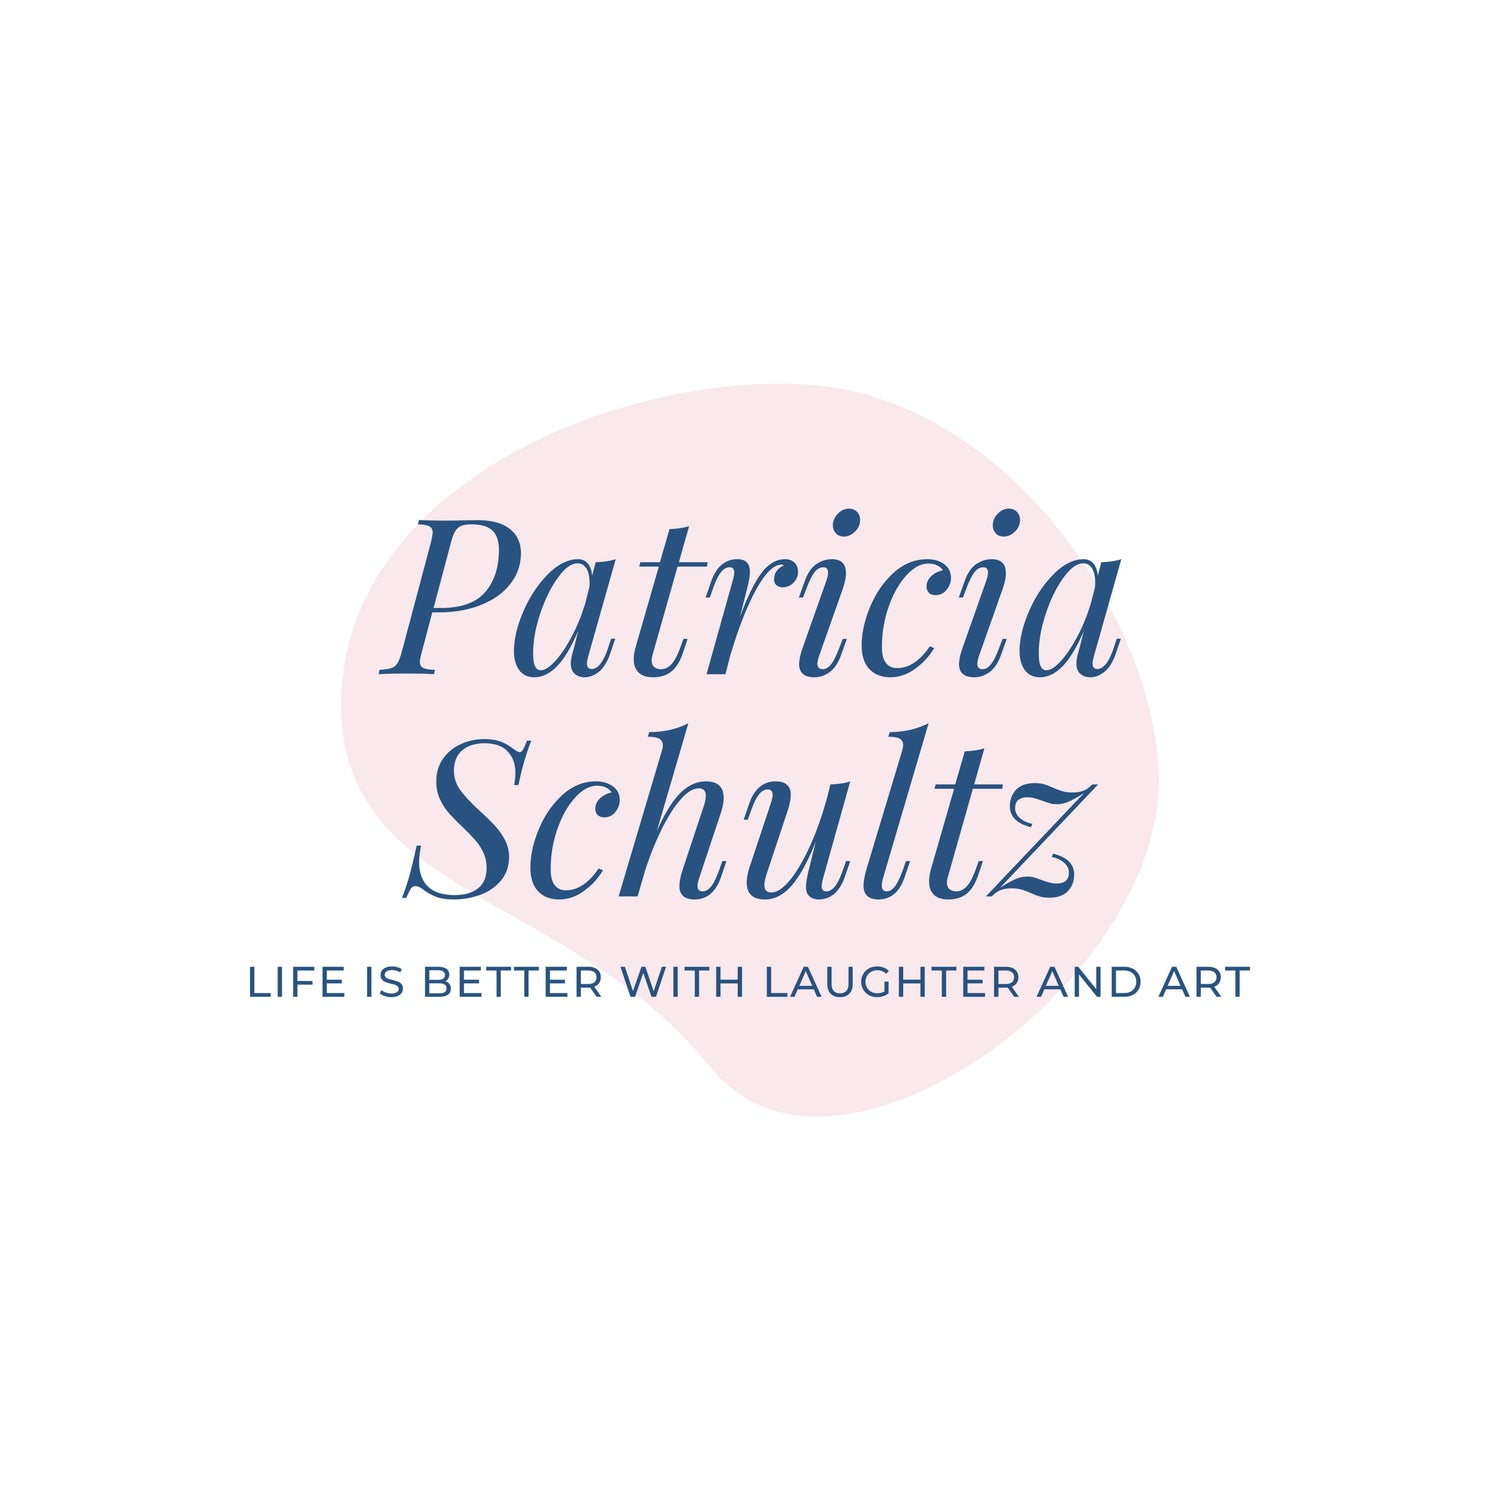 Patricia Schultz